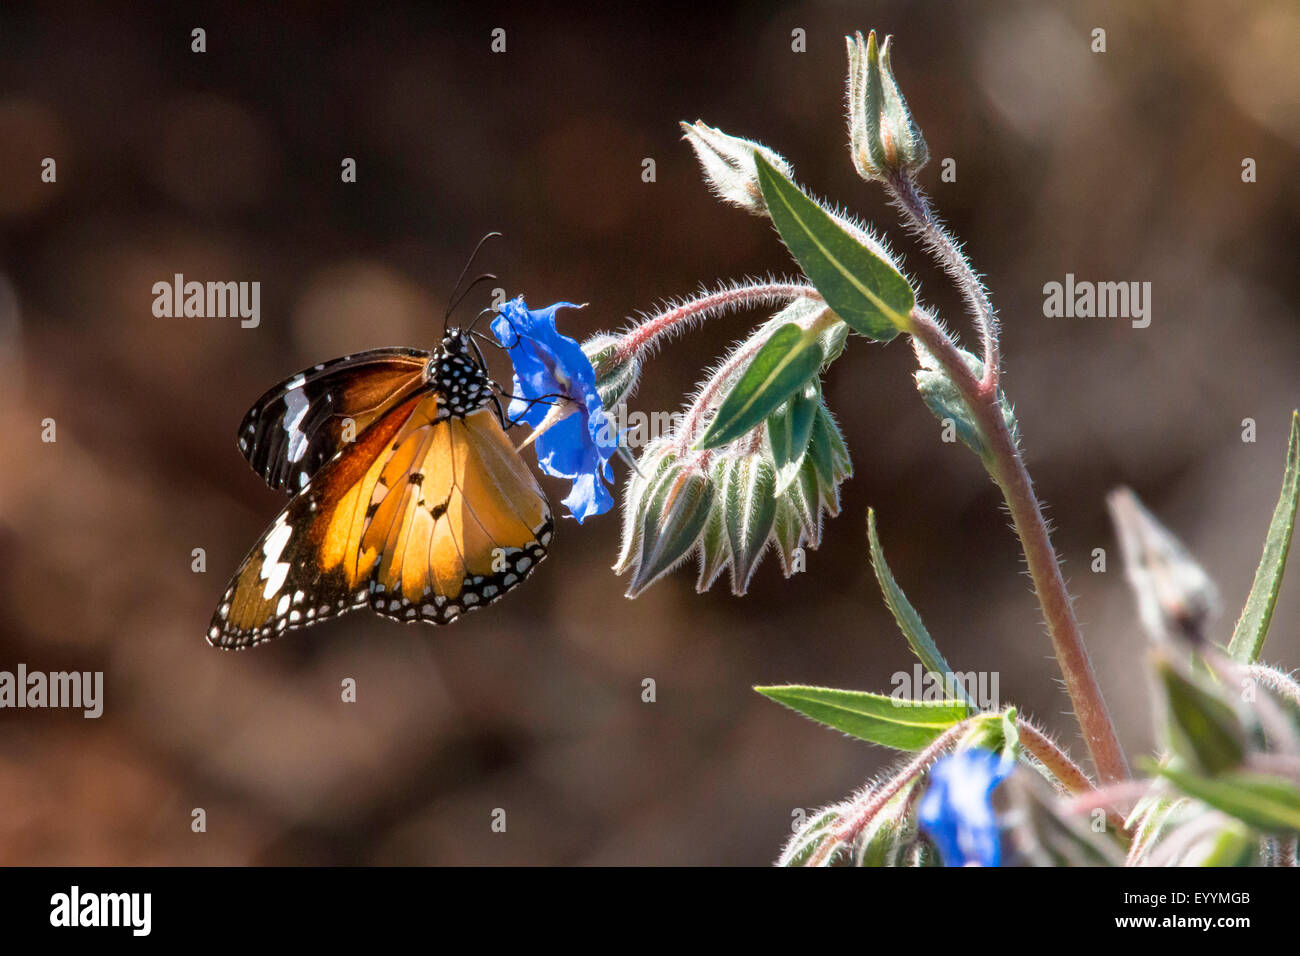 L'asclépiade, papillon monarque (Danaus plexippus), Papillon monarque introduit en Australie, l'Australie, Australie occidentale, Tom Price Banque D'Images